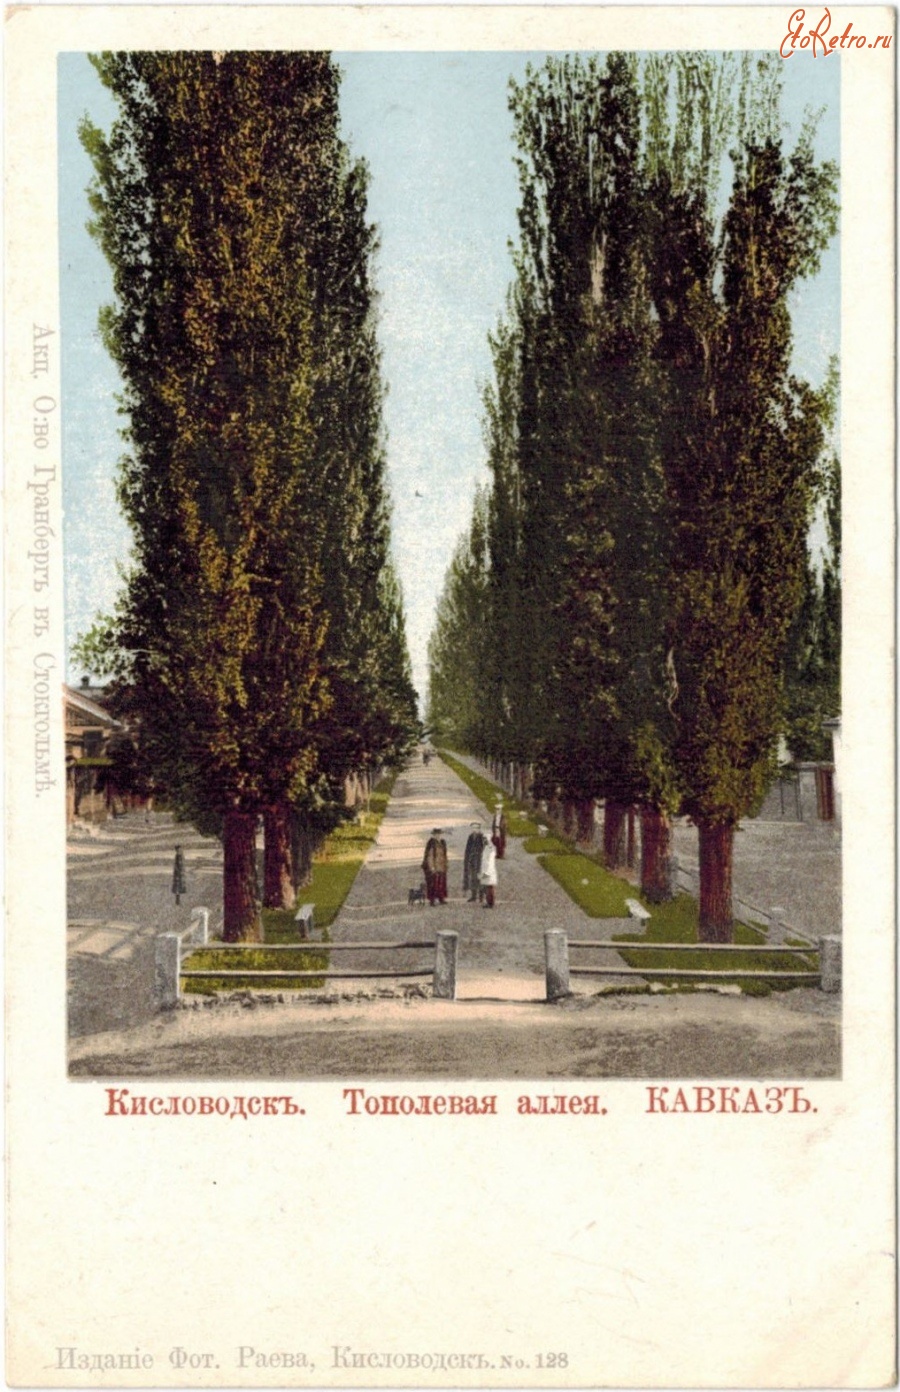 Кисловодск - Аллея тополей от галереи Нарзан, в цвете